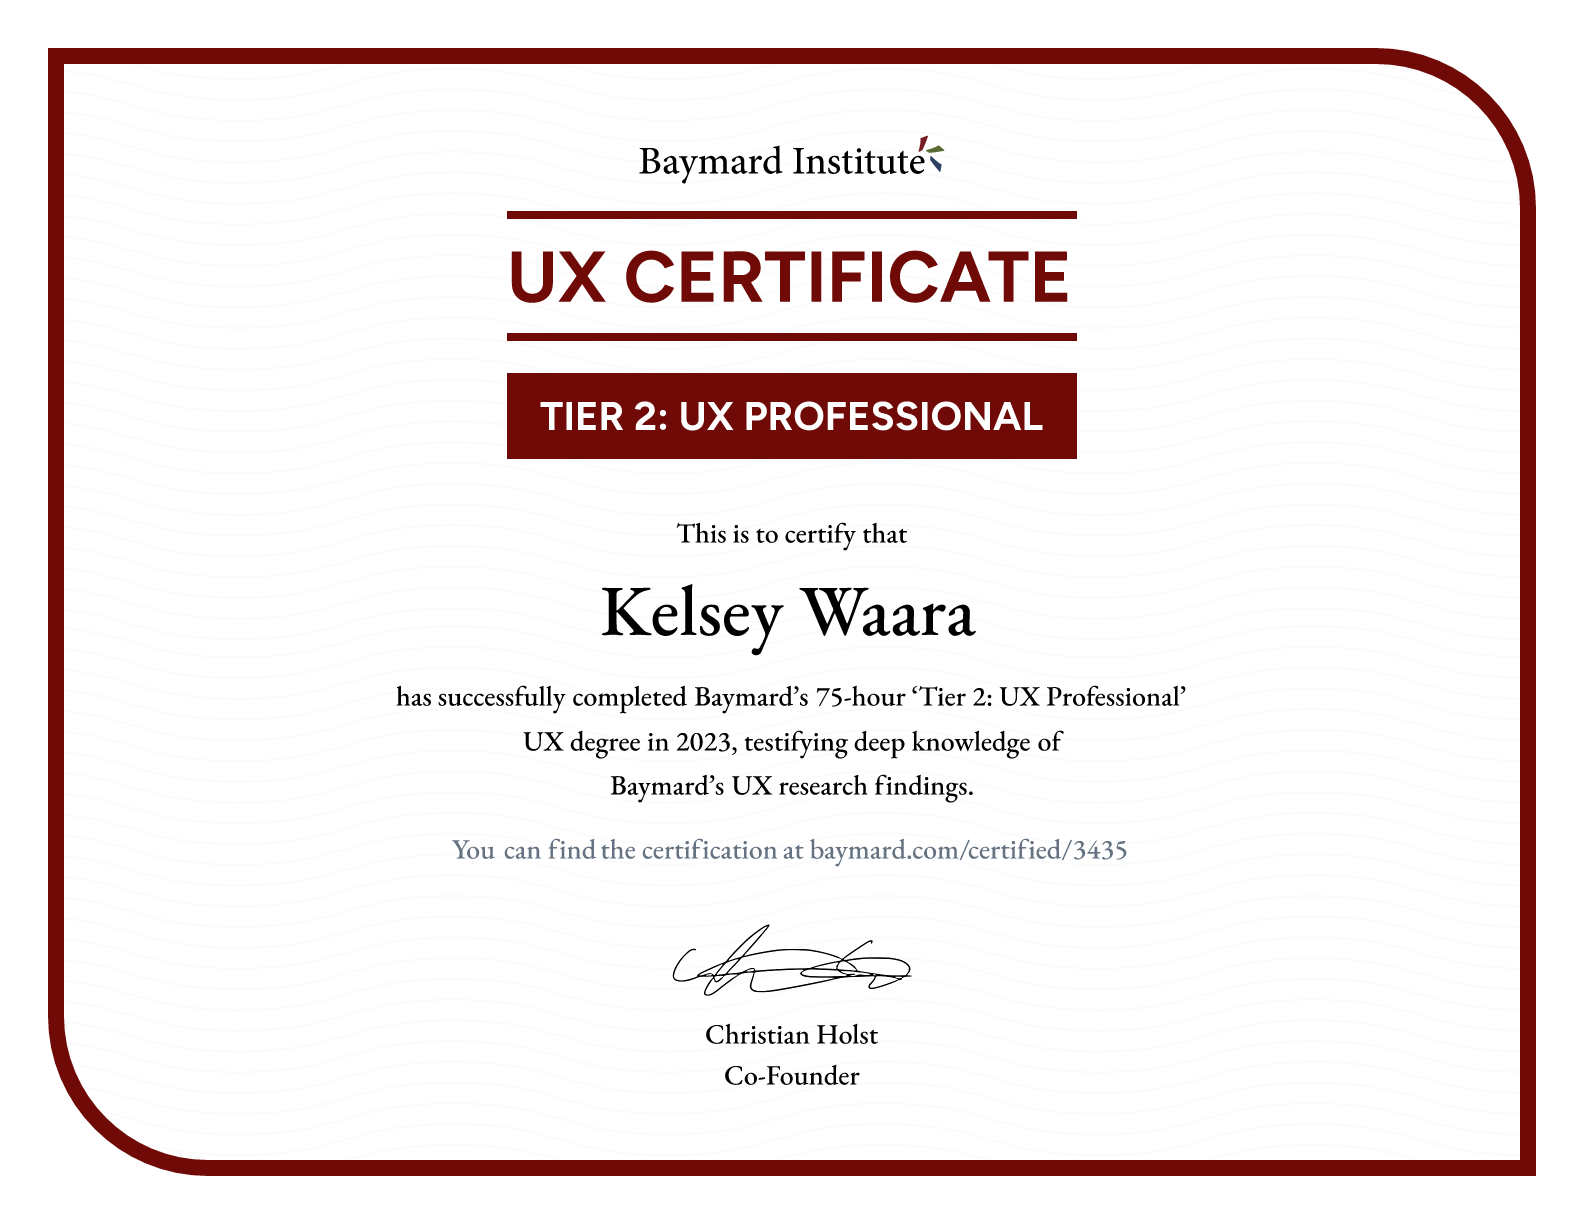 Kelsey Waara’s certificate